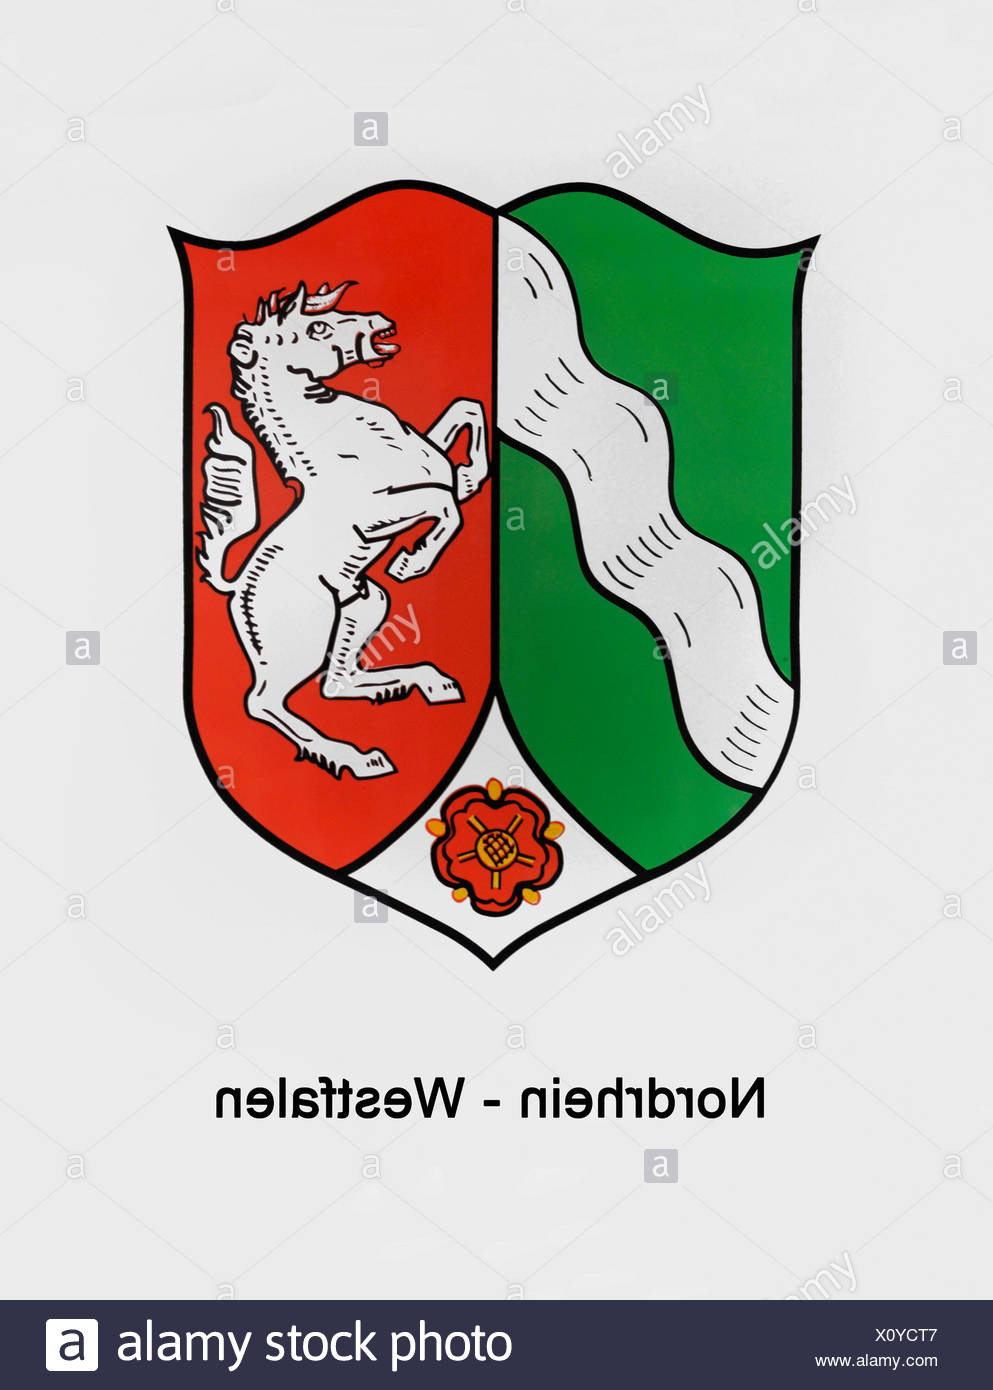 Wappen Von Nordrhein Westfalen Stockfotografie Alamy